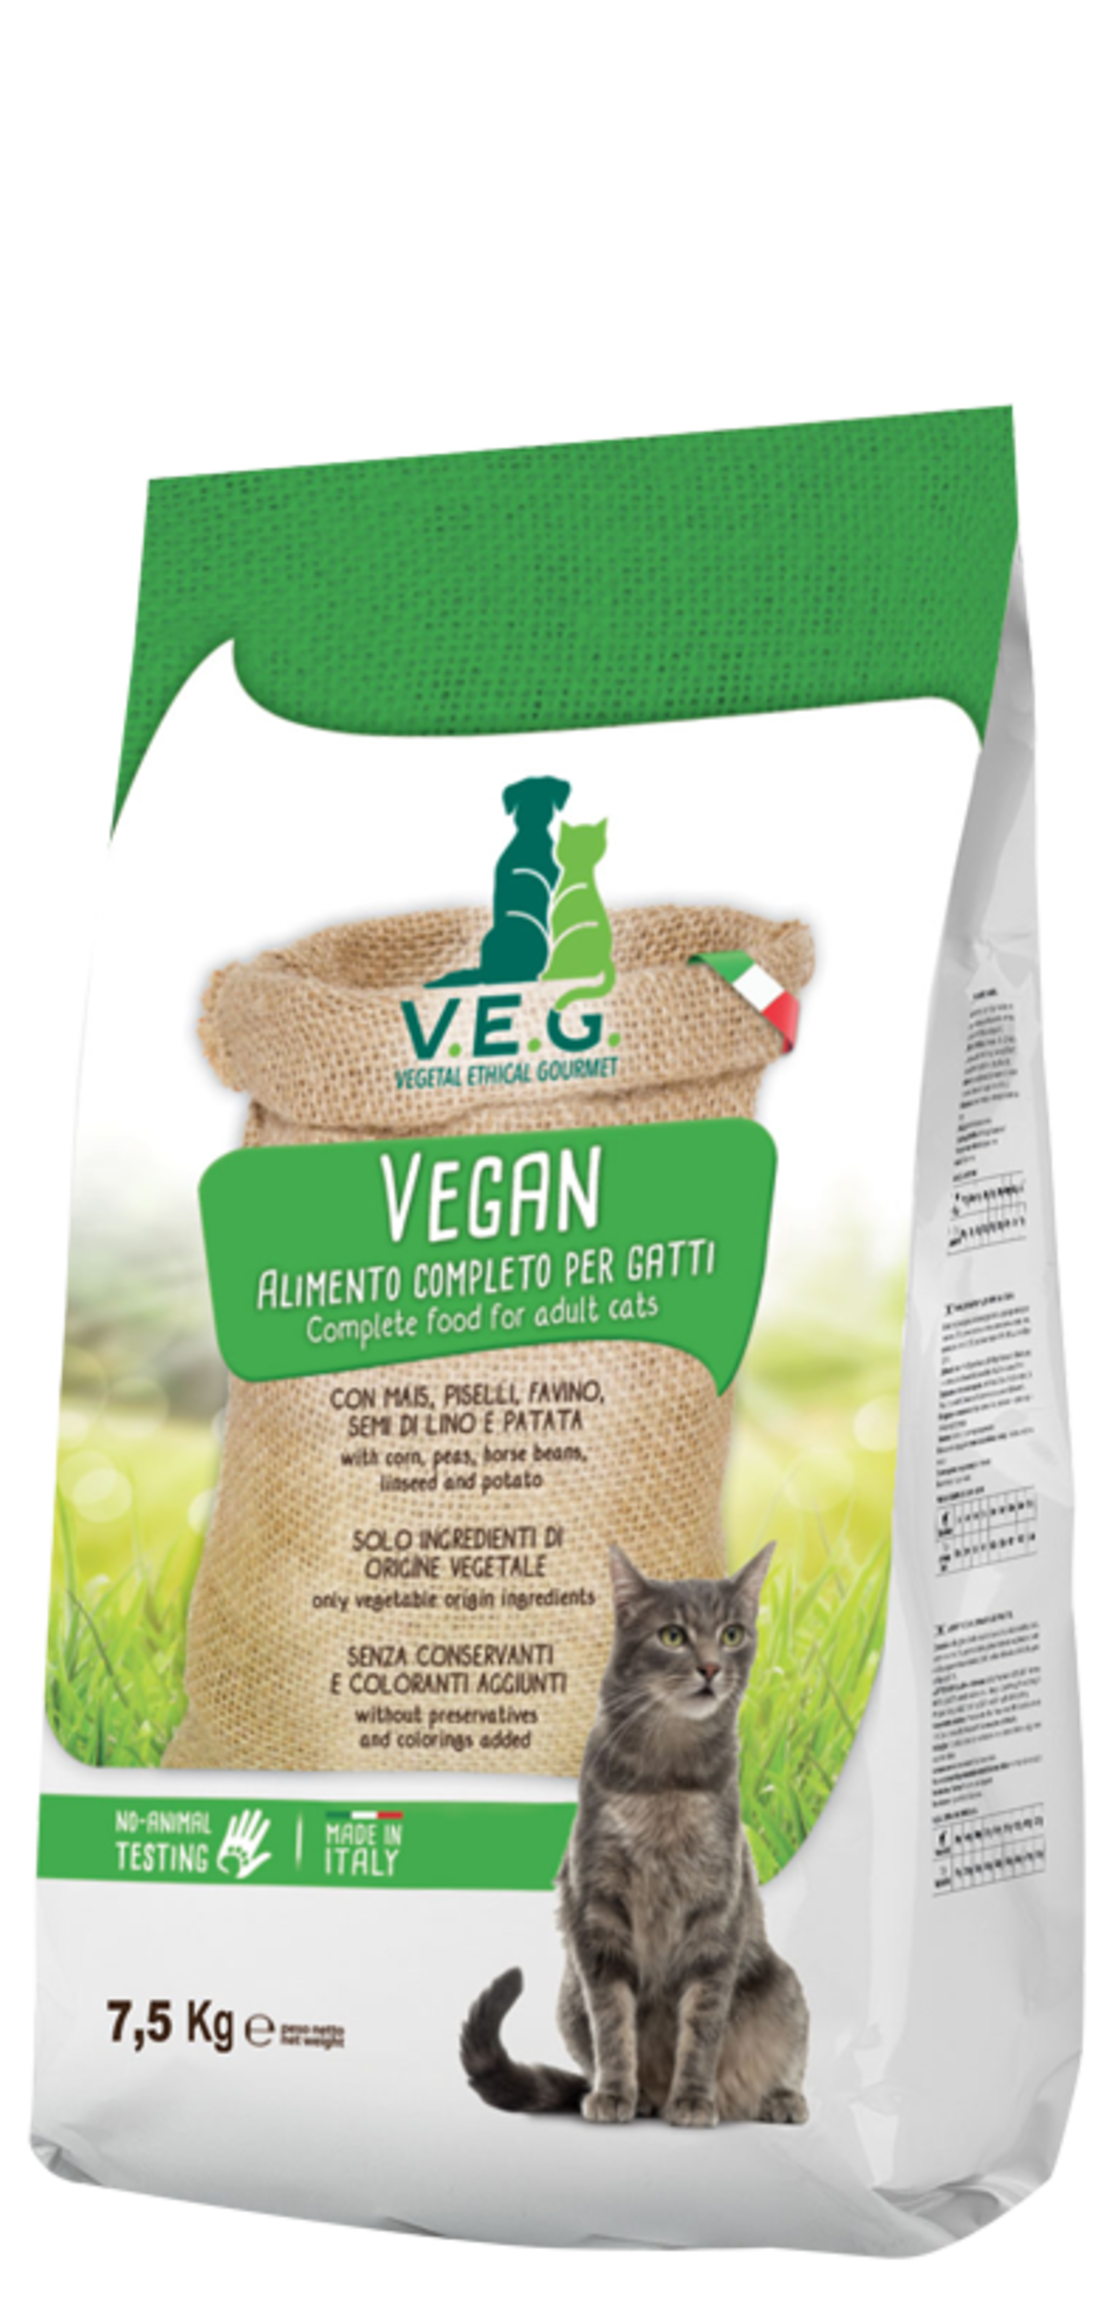 VEG מזון טבעוני לחתולים  1.5 קילו